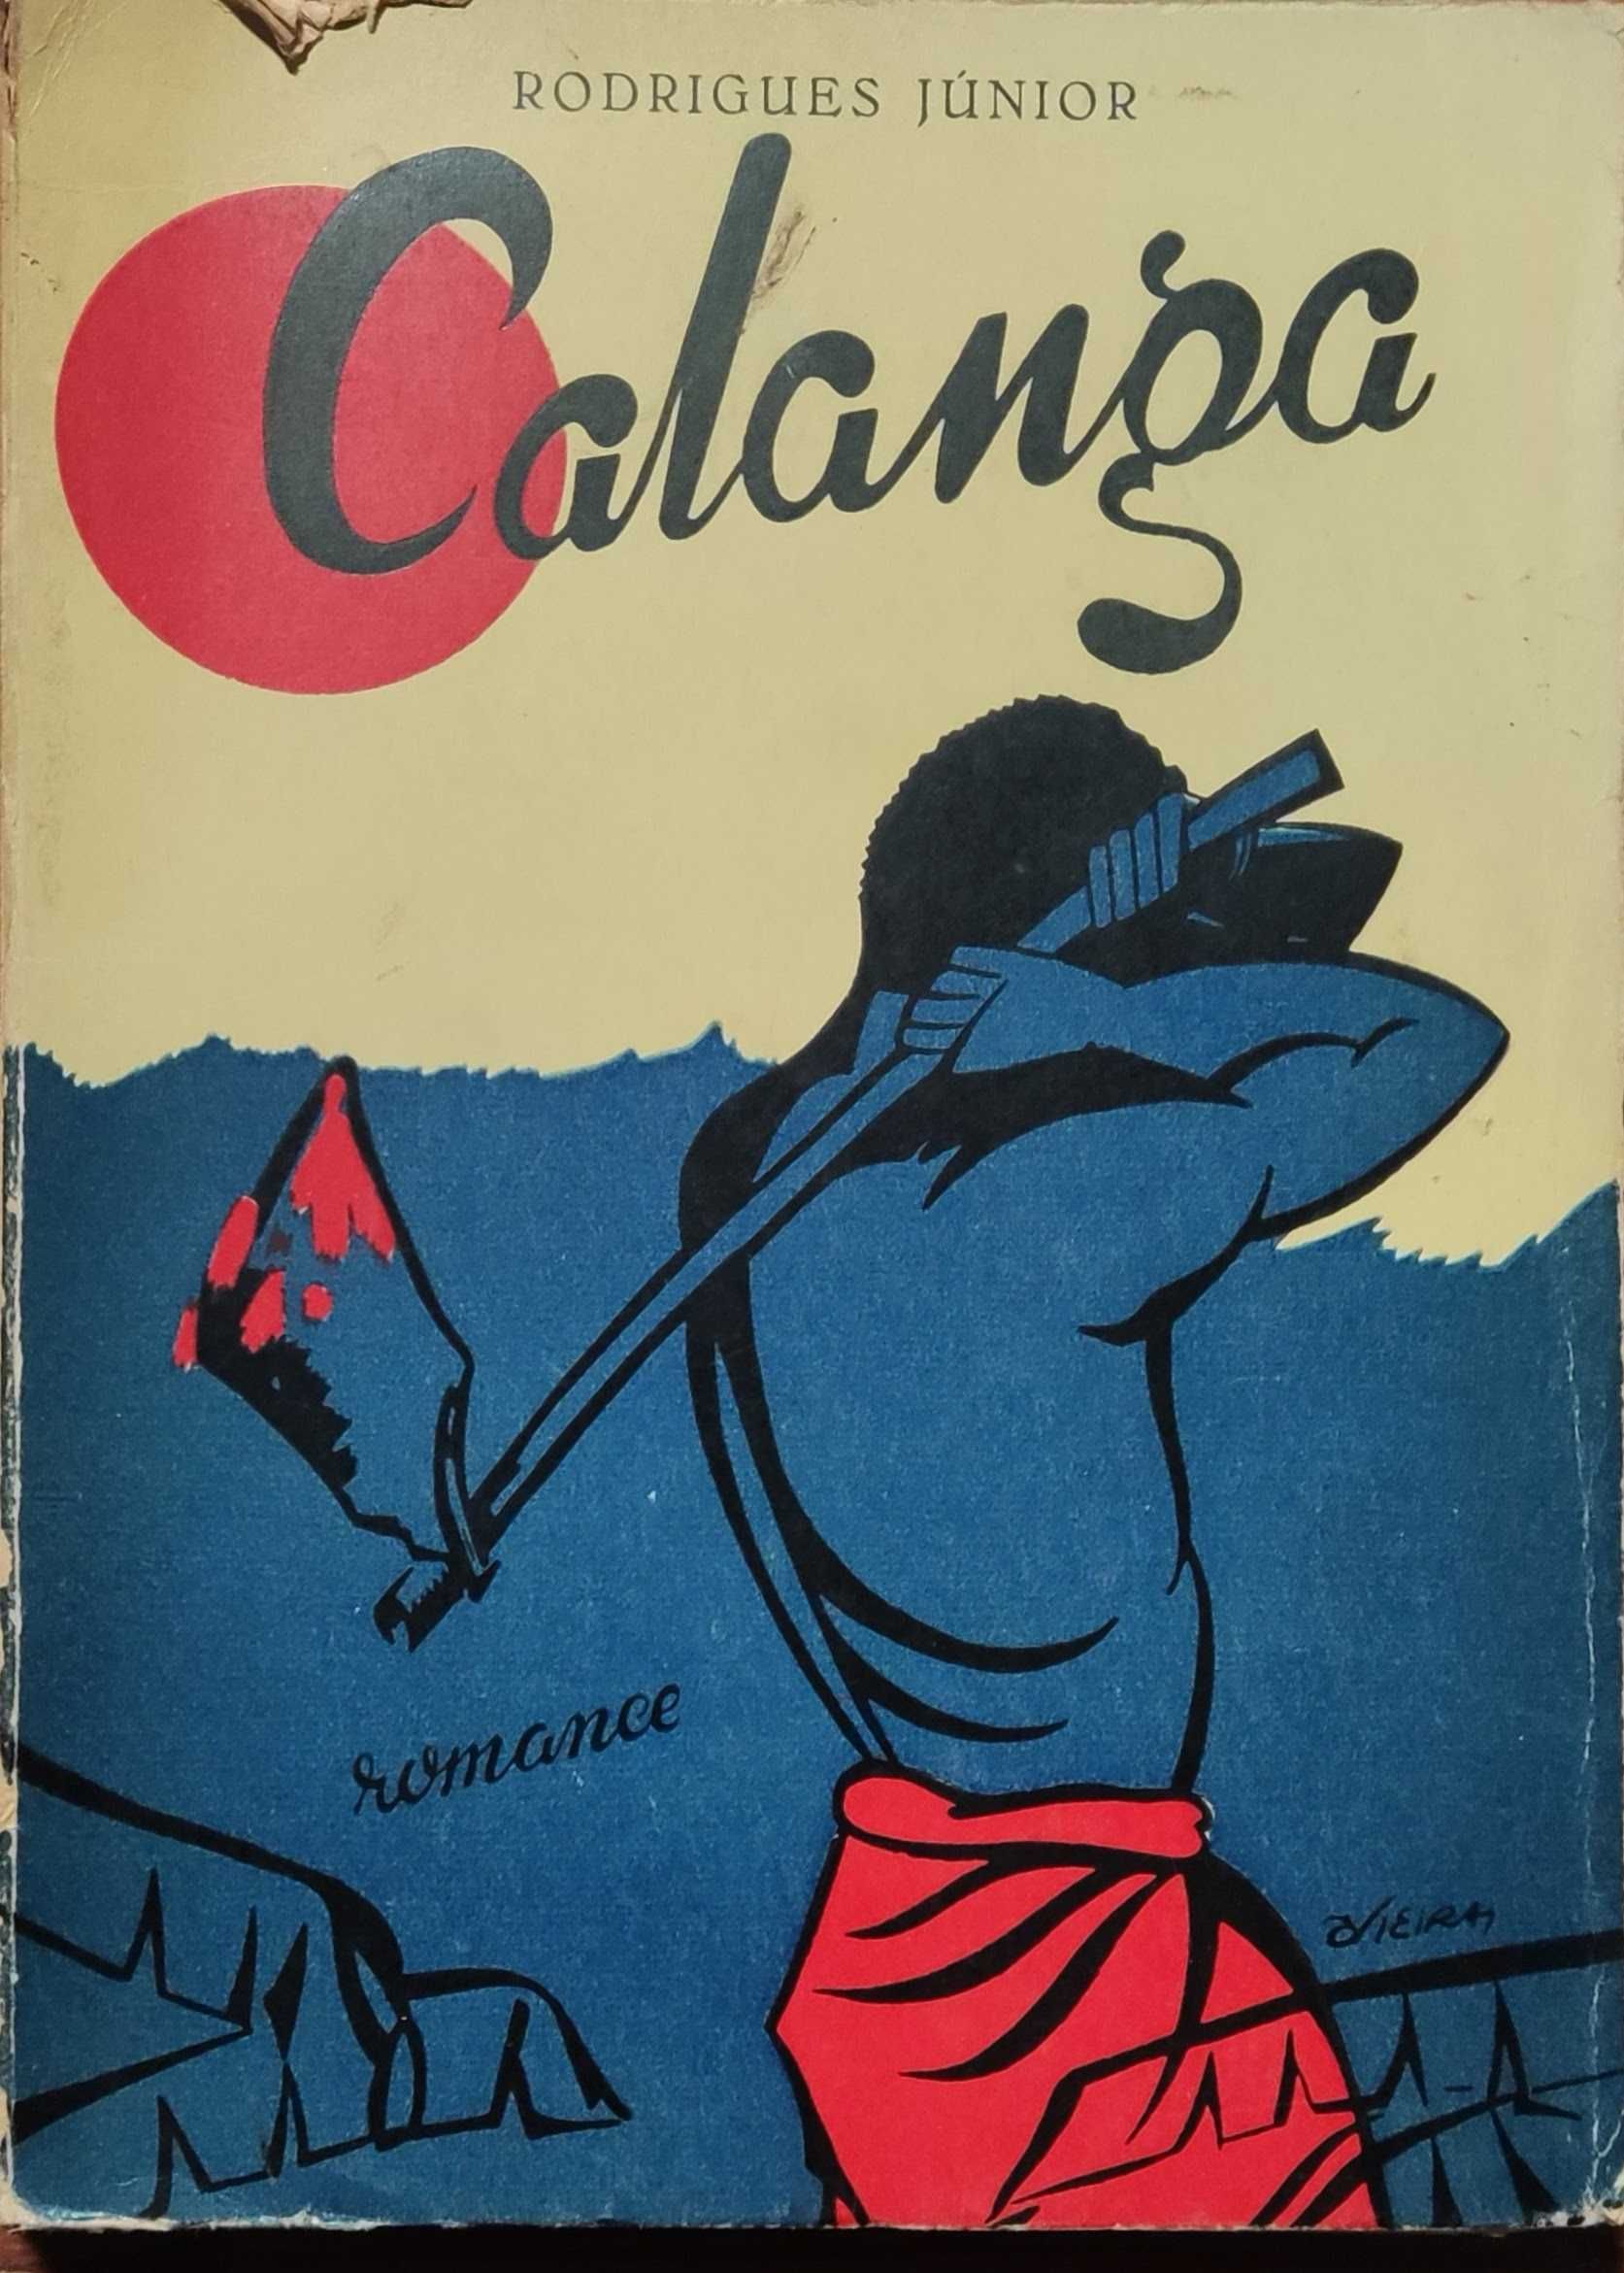 Livro "Calanga" de Rodrigues Júnior